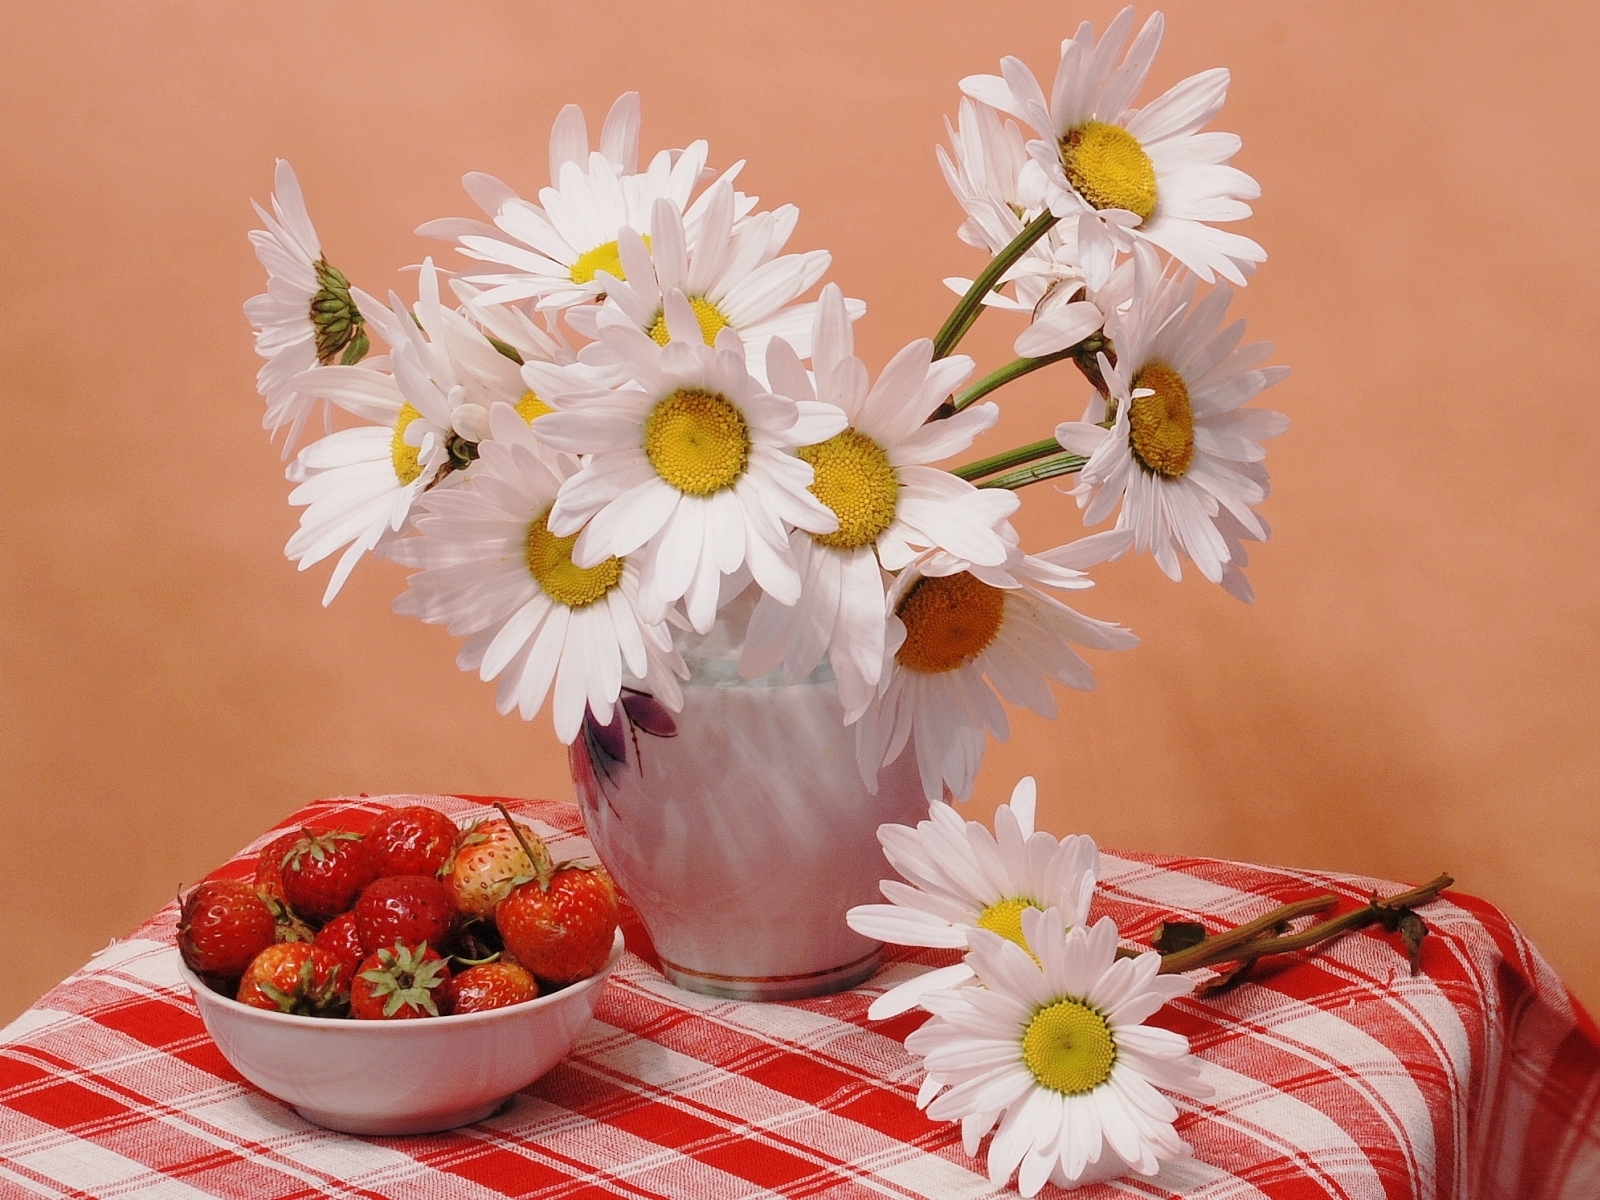 Скачать обои бесплатно Еда, Цветы, Ромашки, Клубника, Растения картинка на рабочий стол ПК